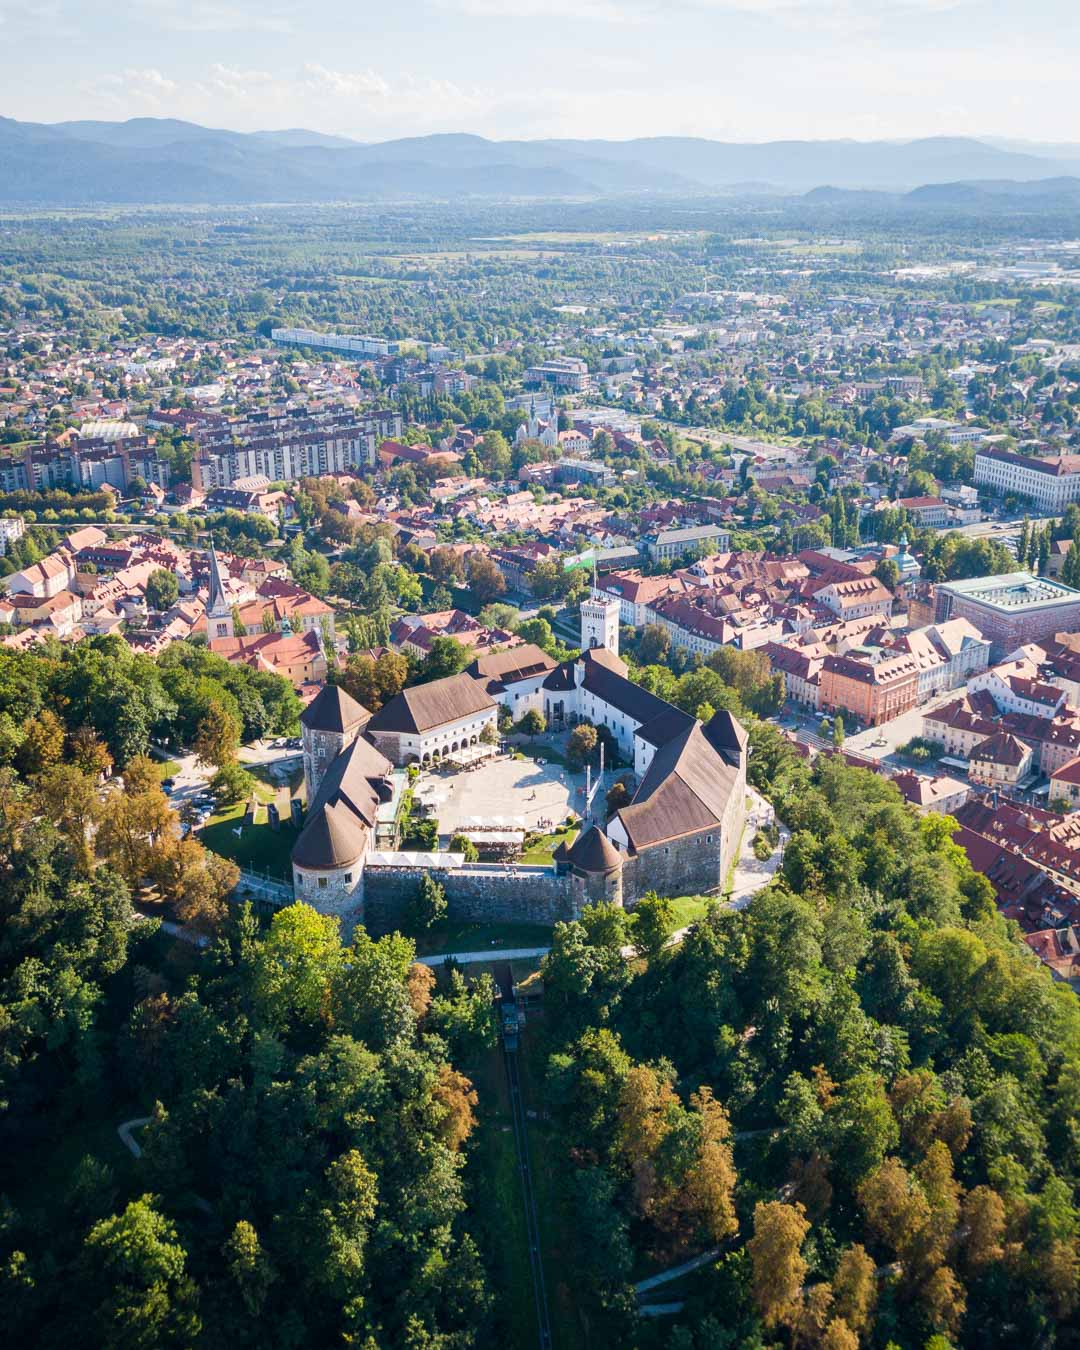 visit the ljubljana castle